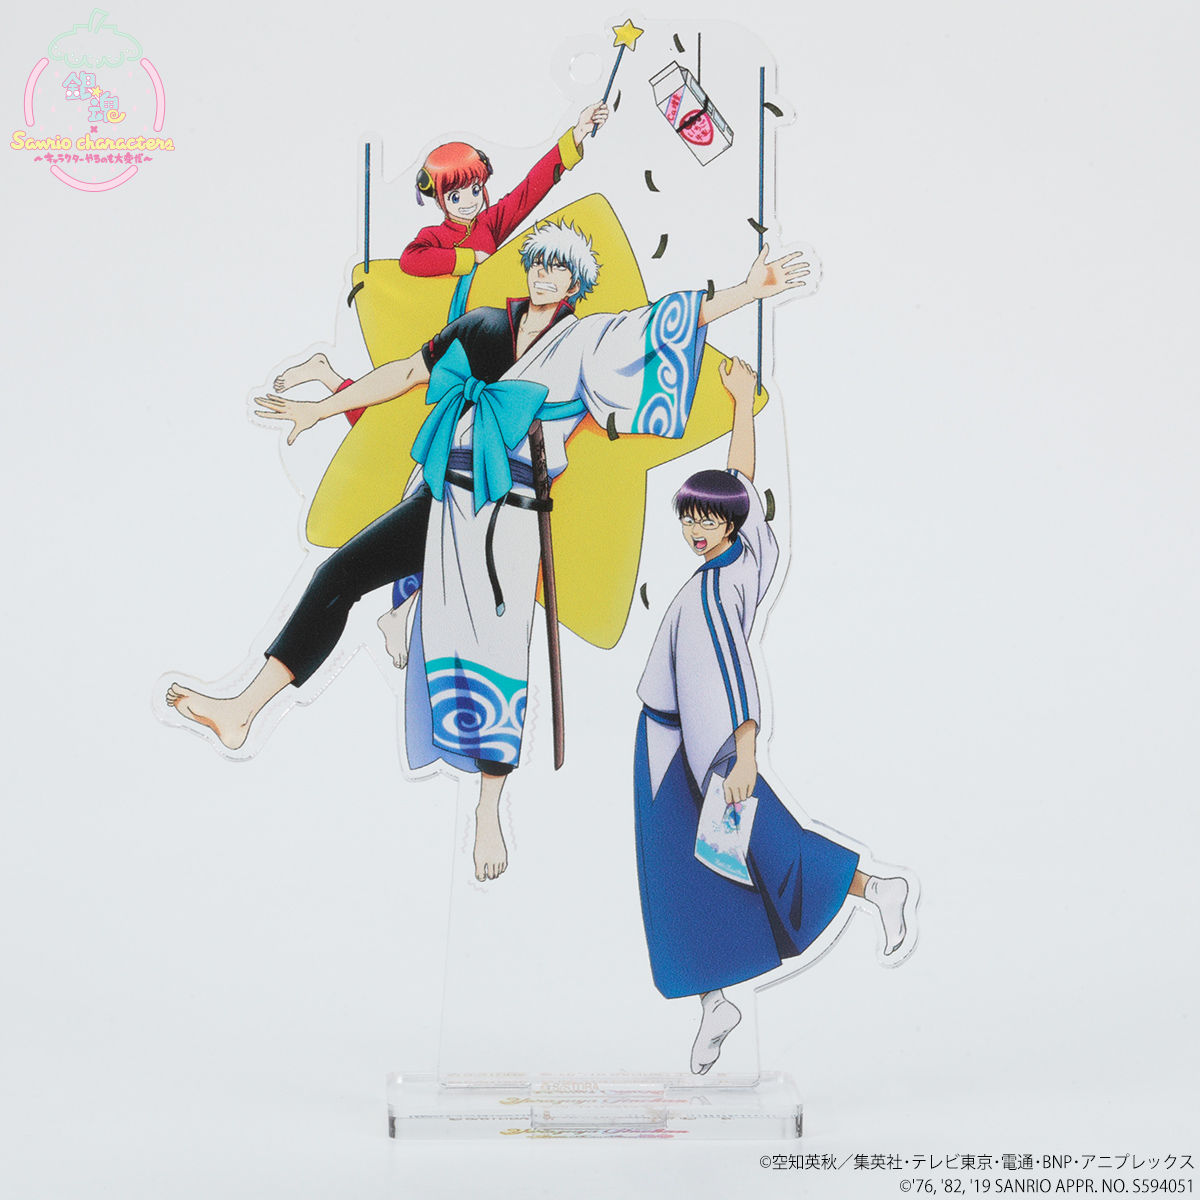 銀魂 Sanrio Characters アクリルマスコットプレート メイキングイラスト サンリオ 趣味 コレクション バンダイナムコグループ公式通販サイト